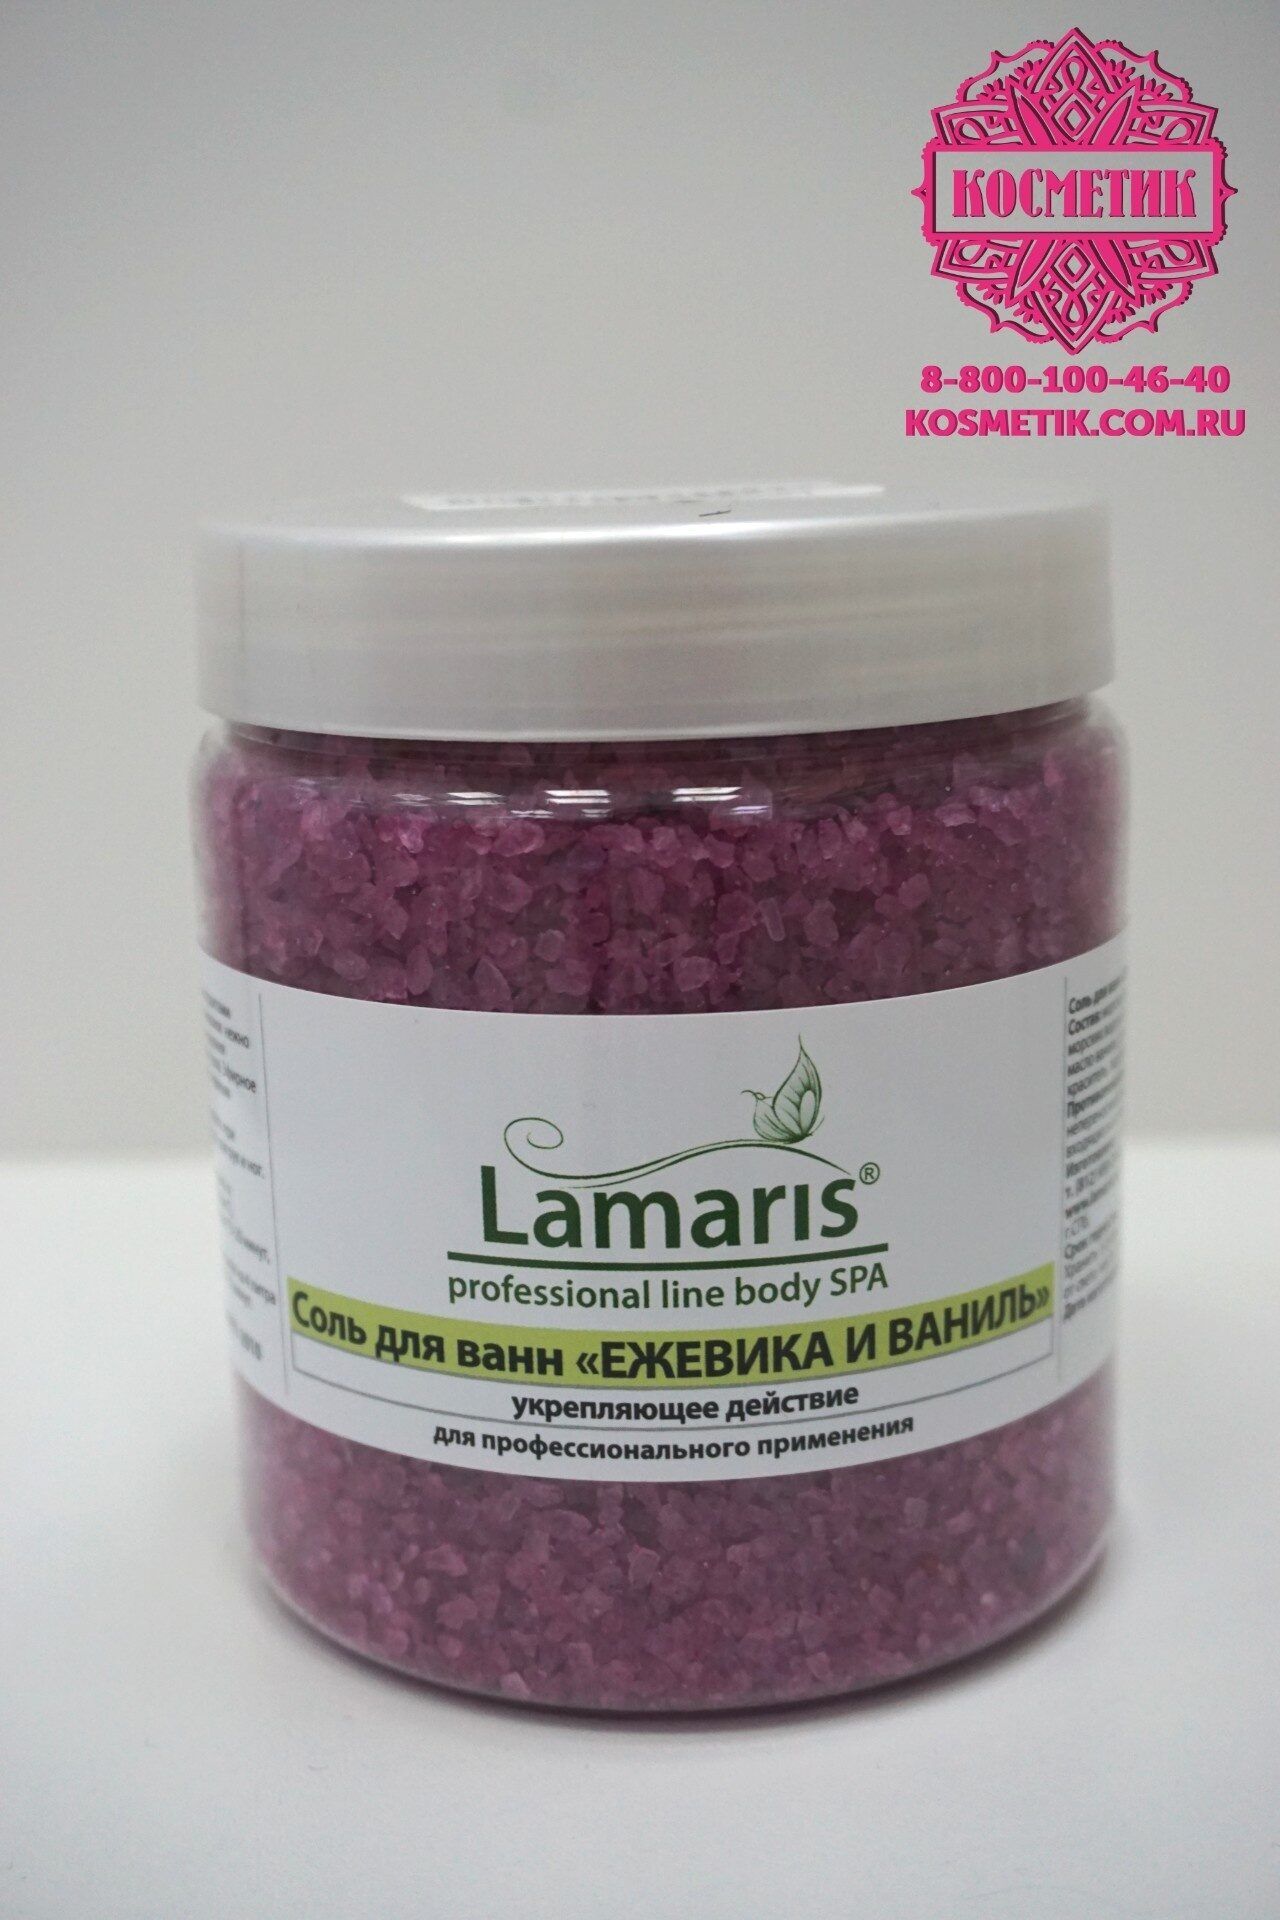 Lamaris, Соль для ванн "Ежевика и ваниль", 660гр Россия